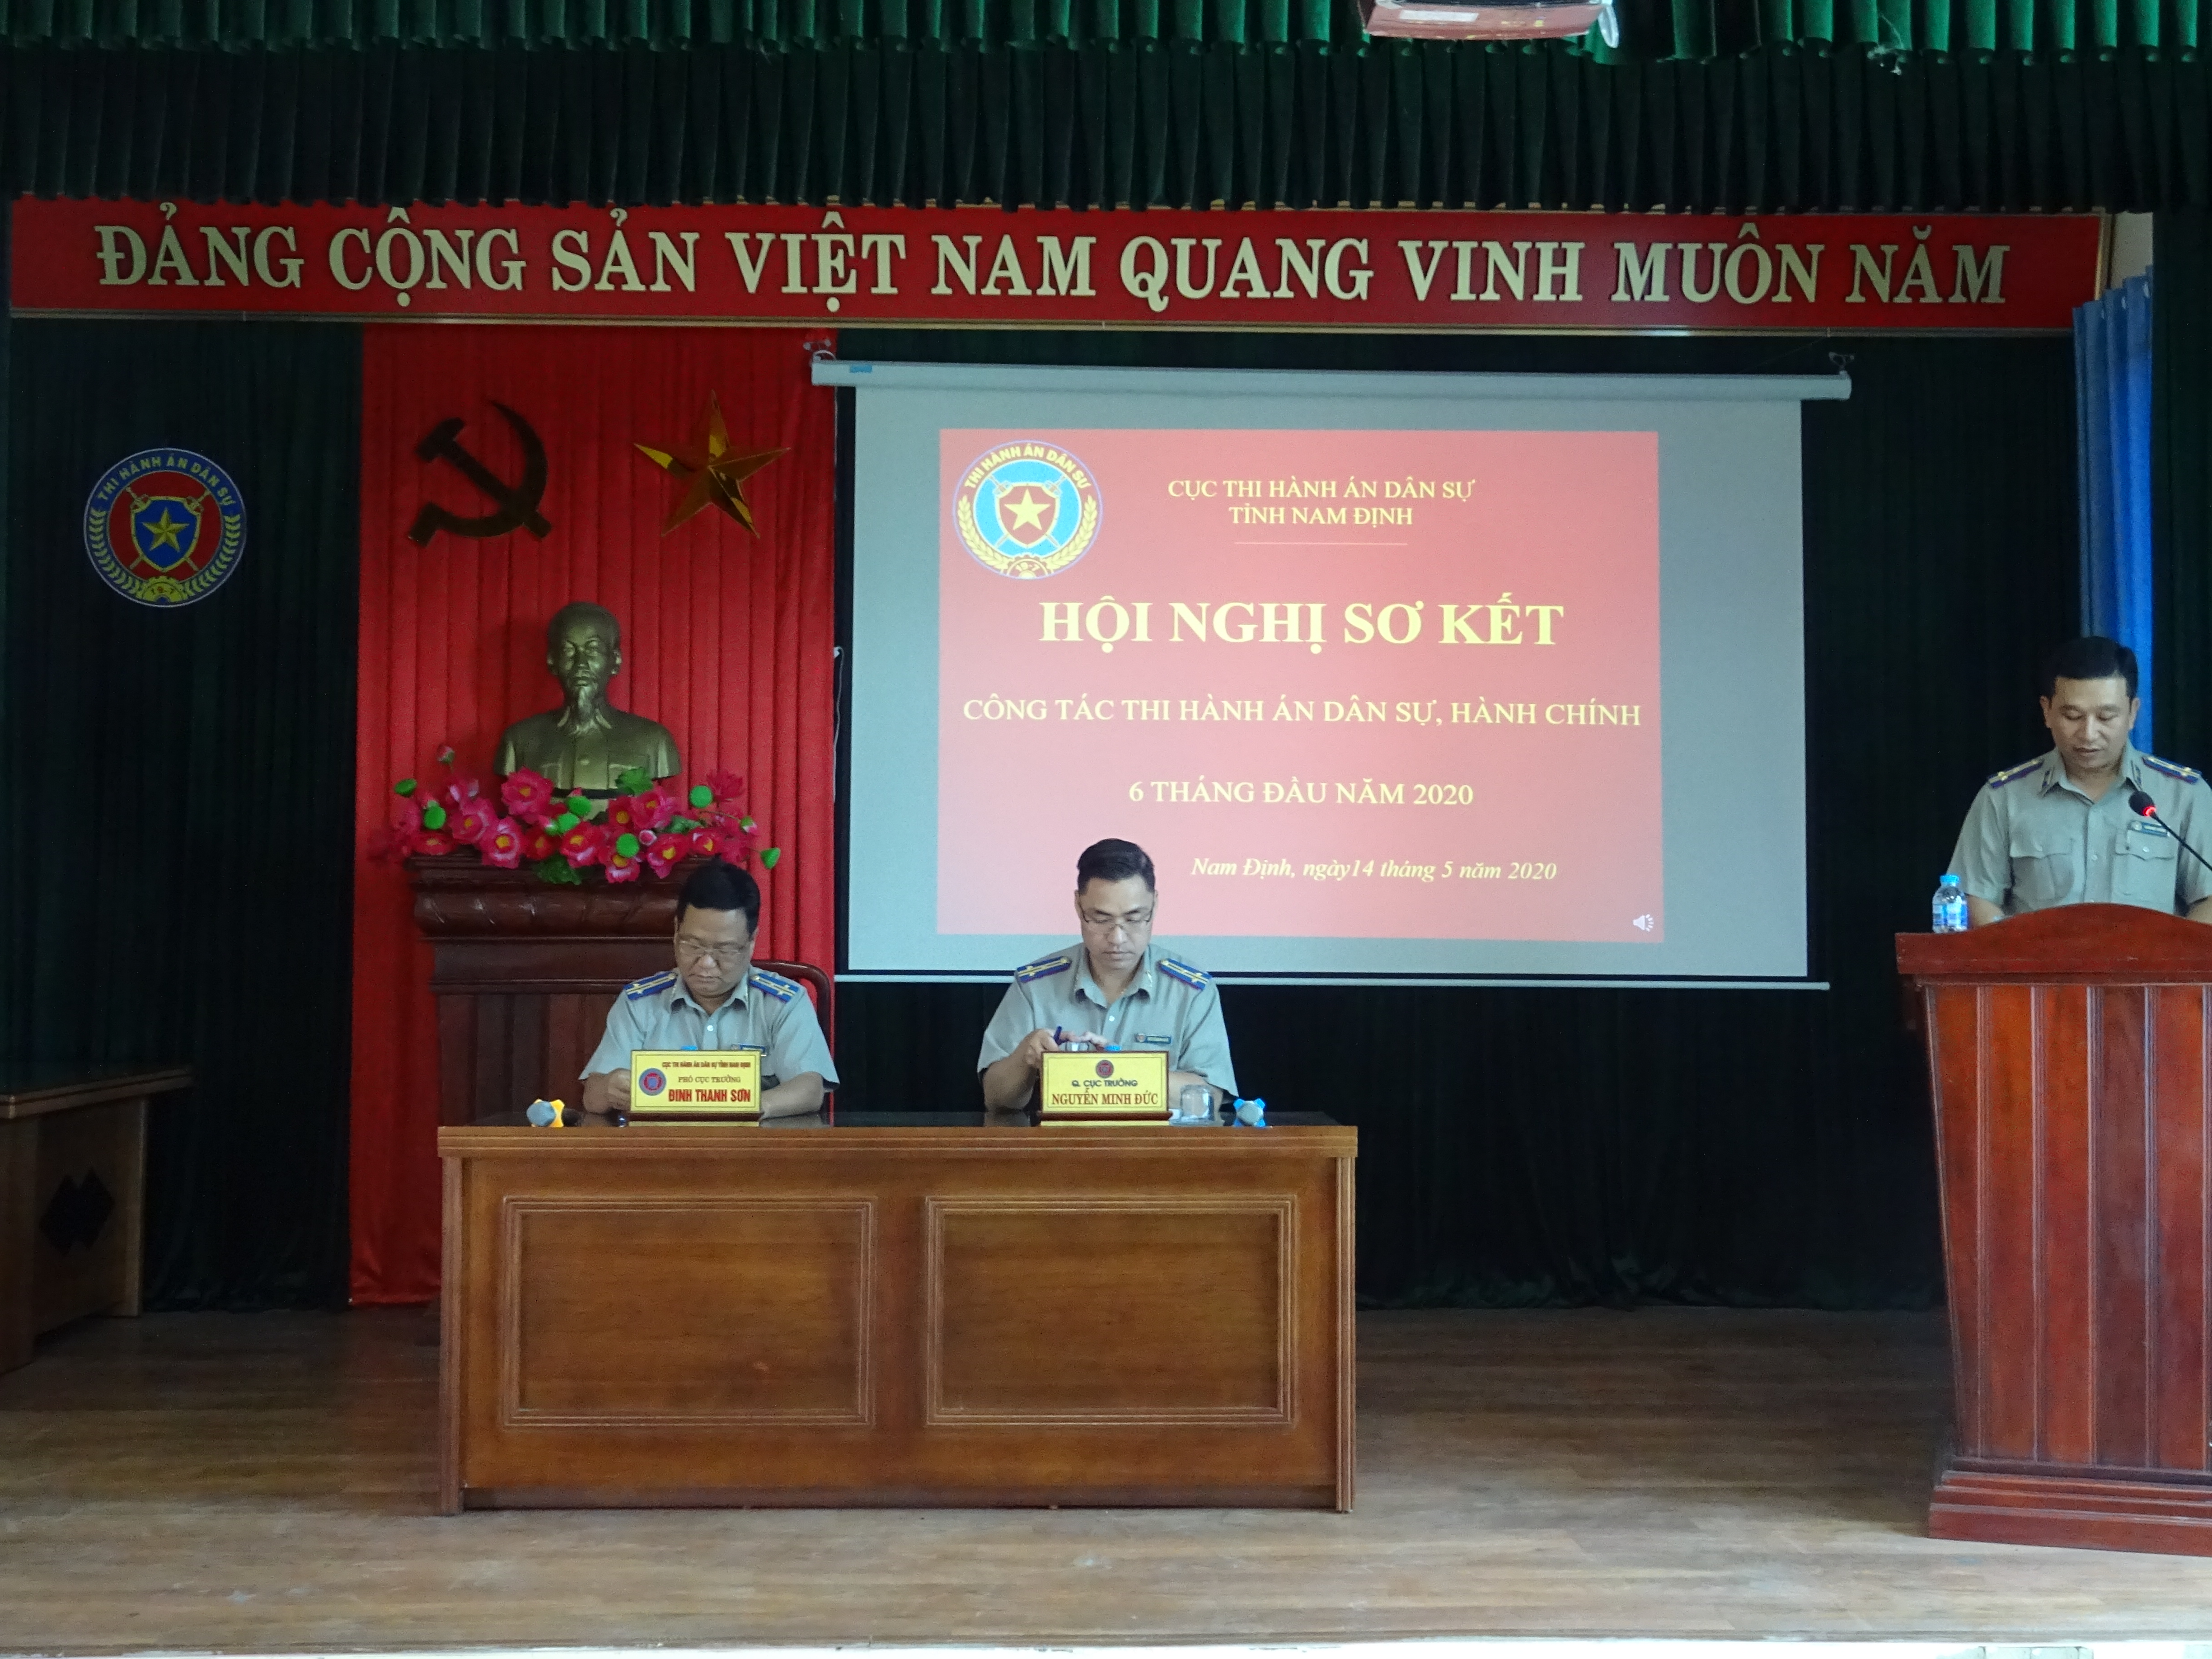 Hội nghị Sơ kết công tác Thi hành án dân sự, hành chính 6 tháng đầu năm 2020 trên địa bàn tỉnh Nam Định